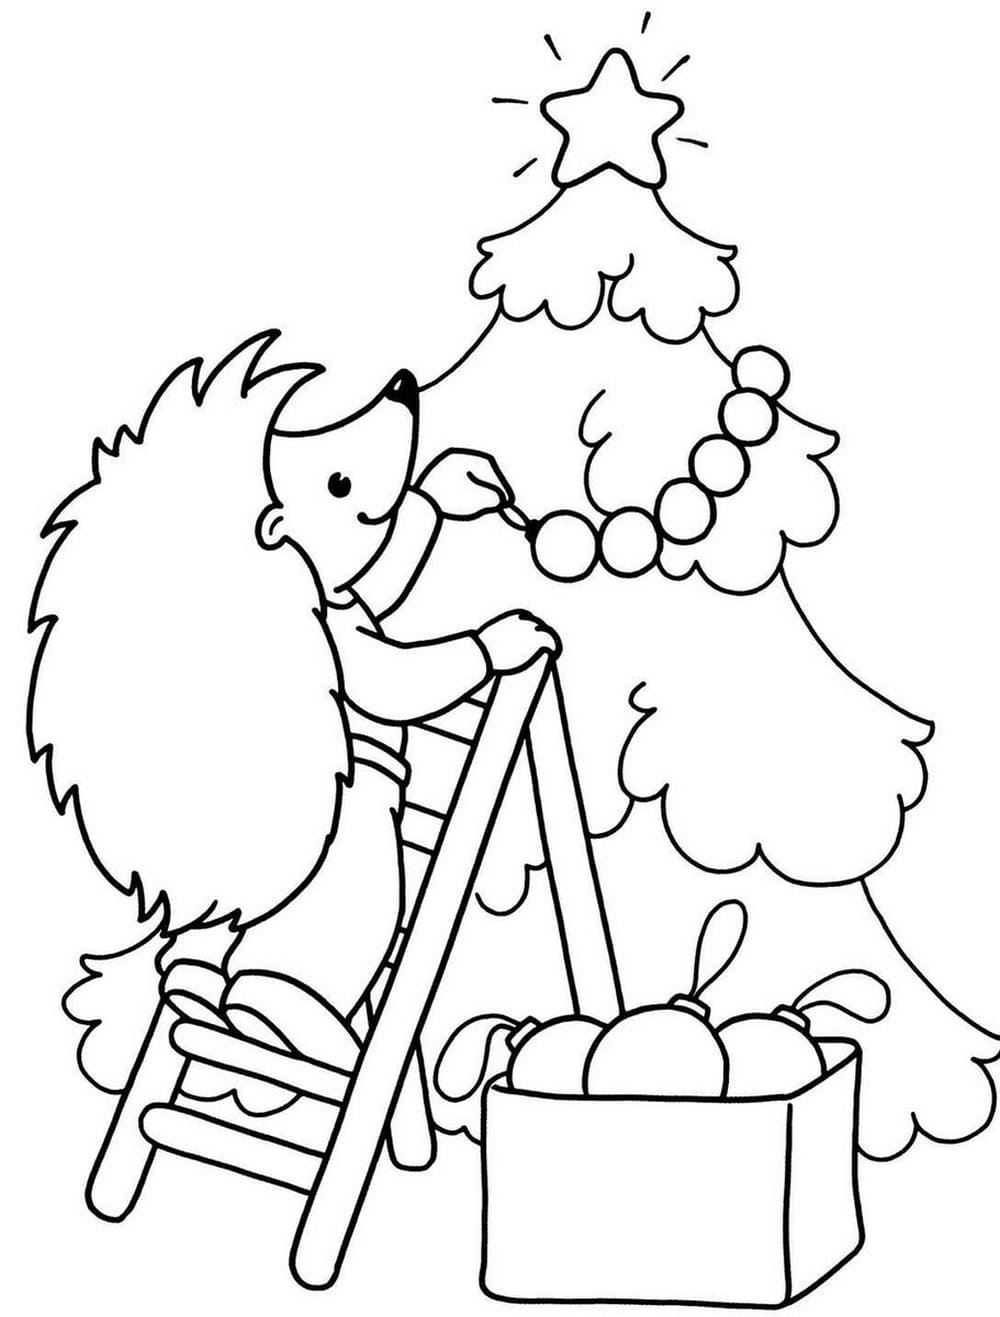 раскраска новогодняя елка картинка для детей распечатать бесплатно 6